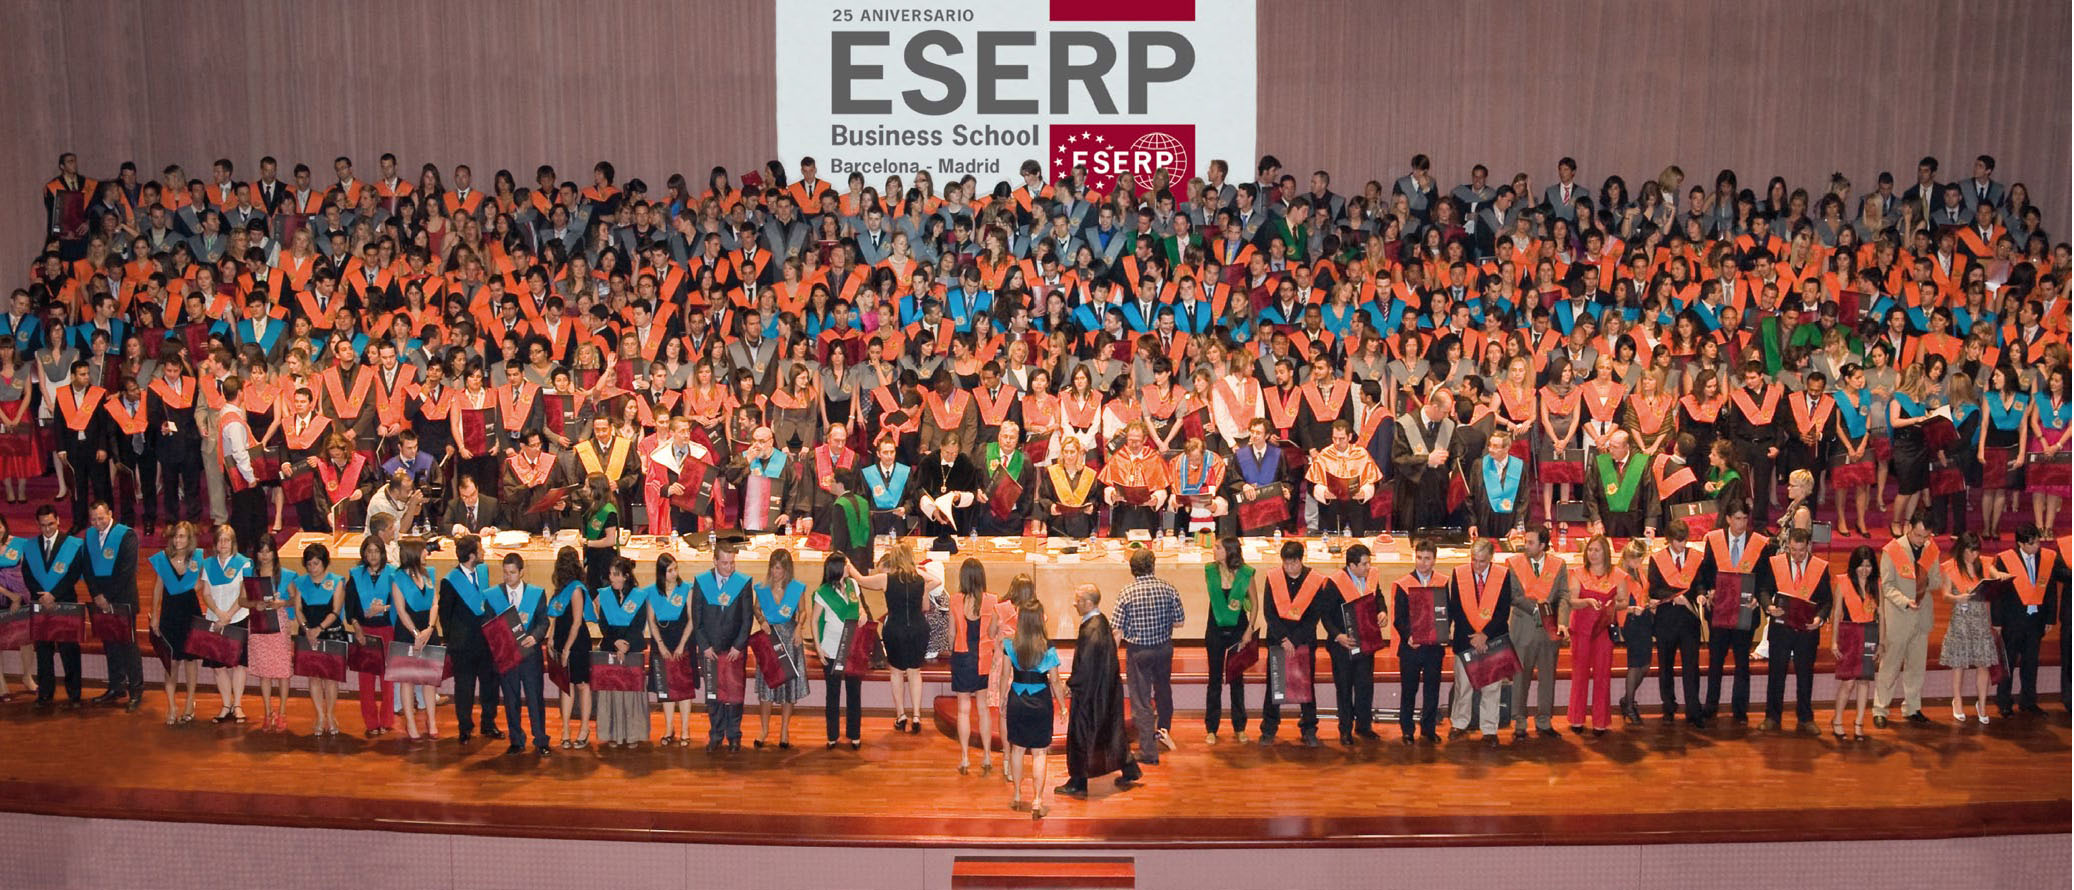 Du học Tây Ban Nha - Học viện kinh doanh ESERP